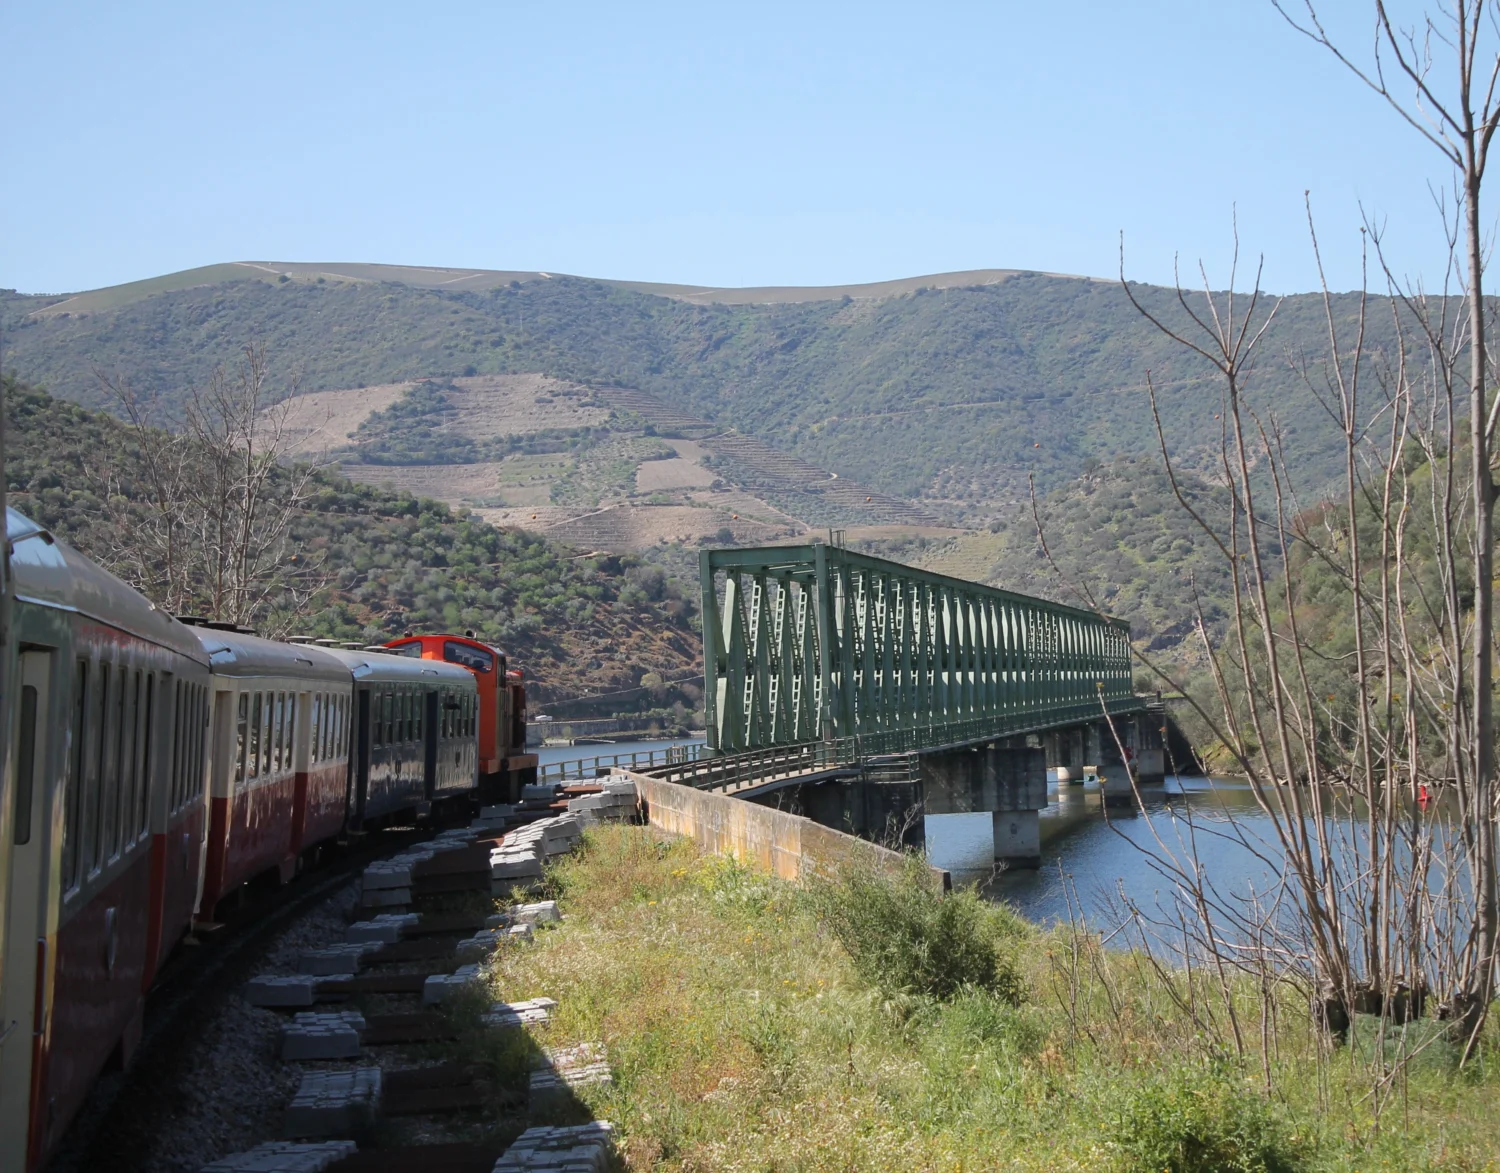 Zug fährt in Rechtskurve über Metallbrücke vor hohem Bergkamm. Blick aus dem Zugfenster